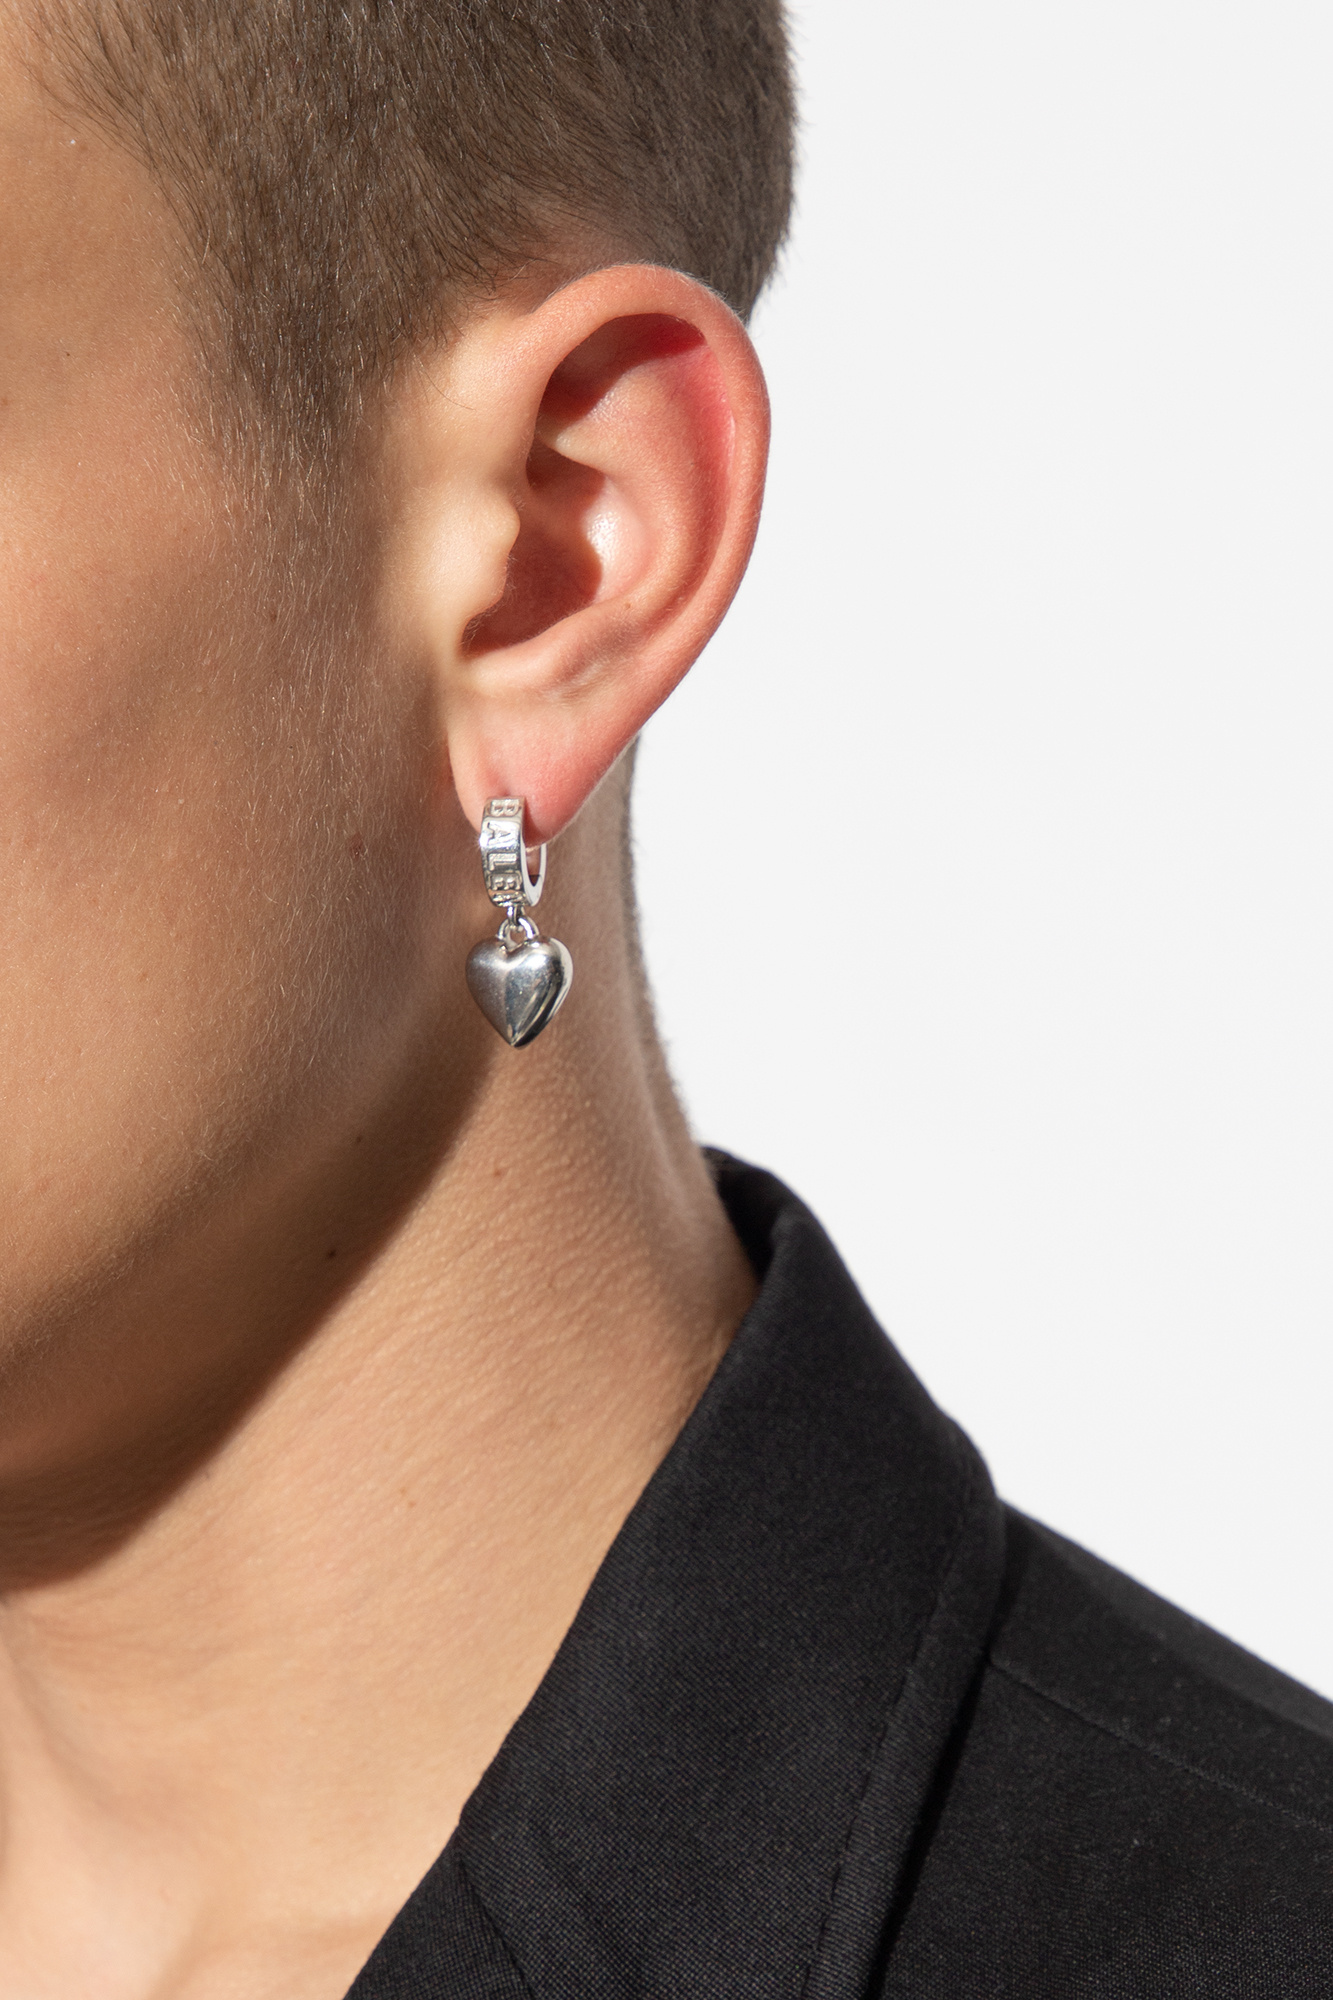 Balenciaga Silver earrings